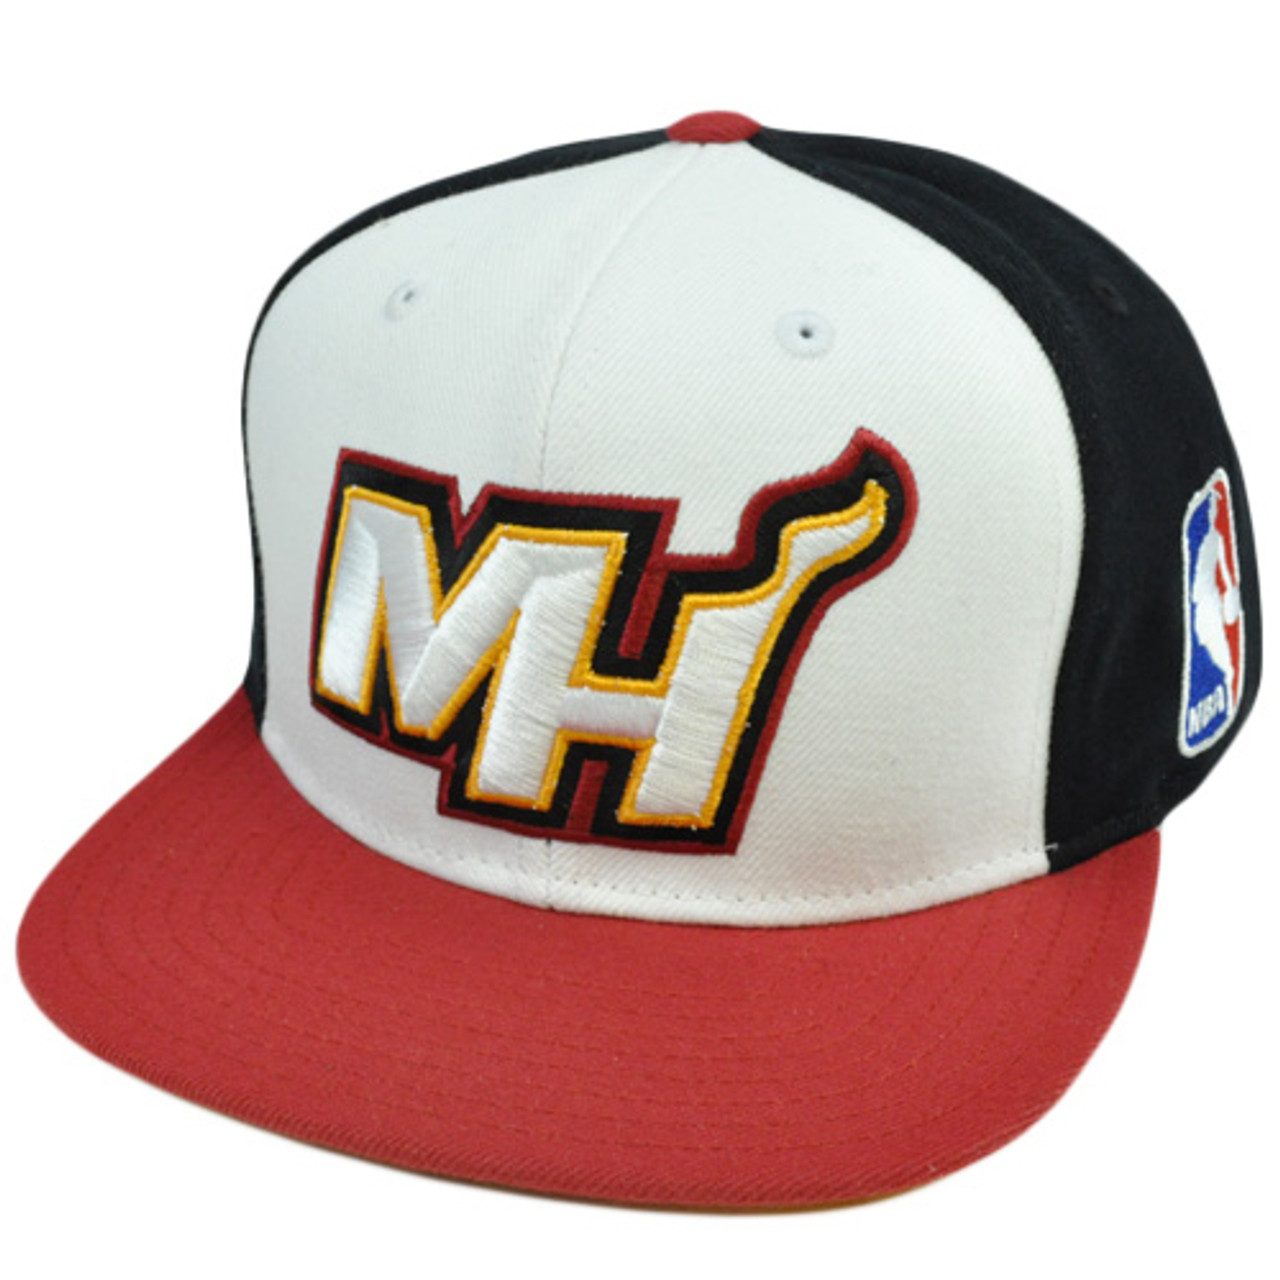  Miami Heat Small/Medium Flat Bill NBA Flex Fit Hat Cap S/M  Black, Red : Sports Fan Beanies : Sports & Outdoors